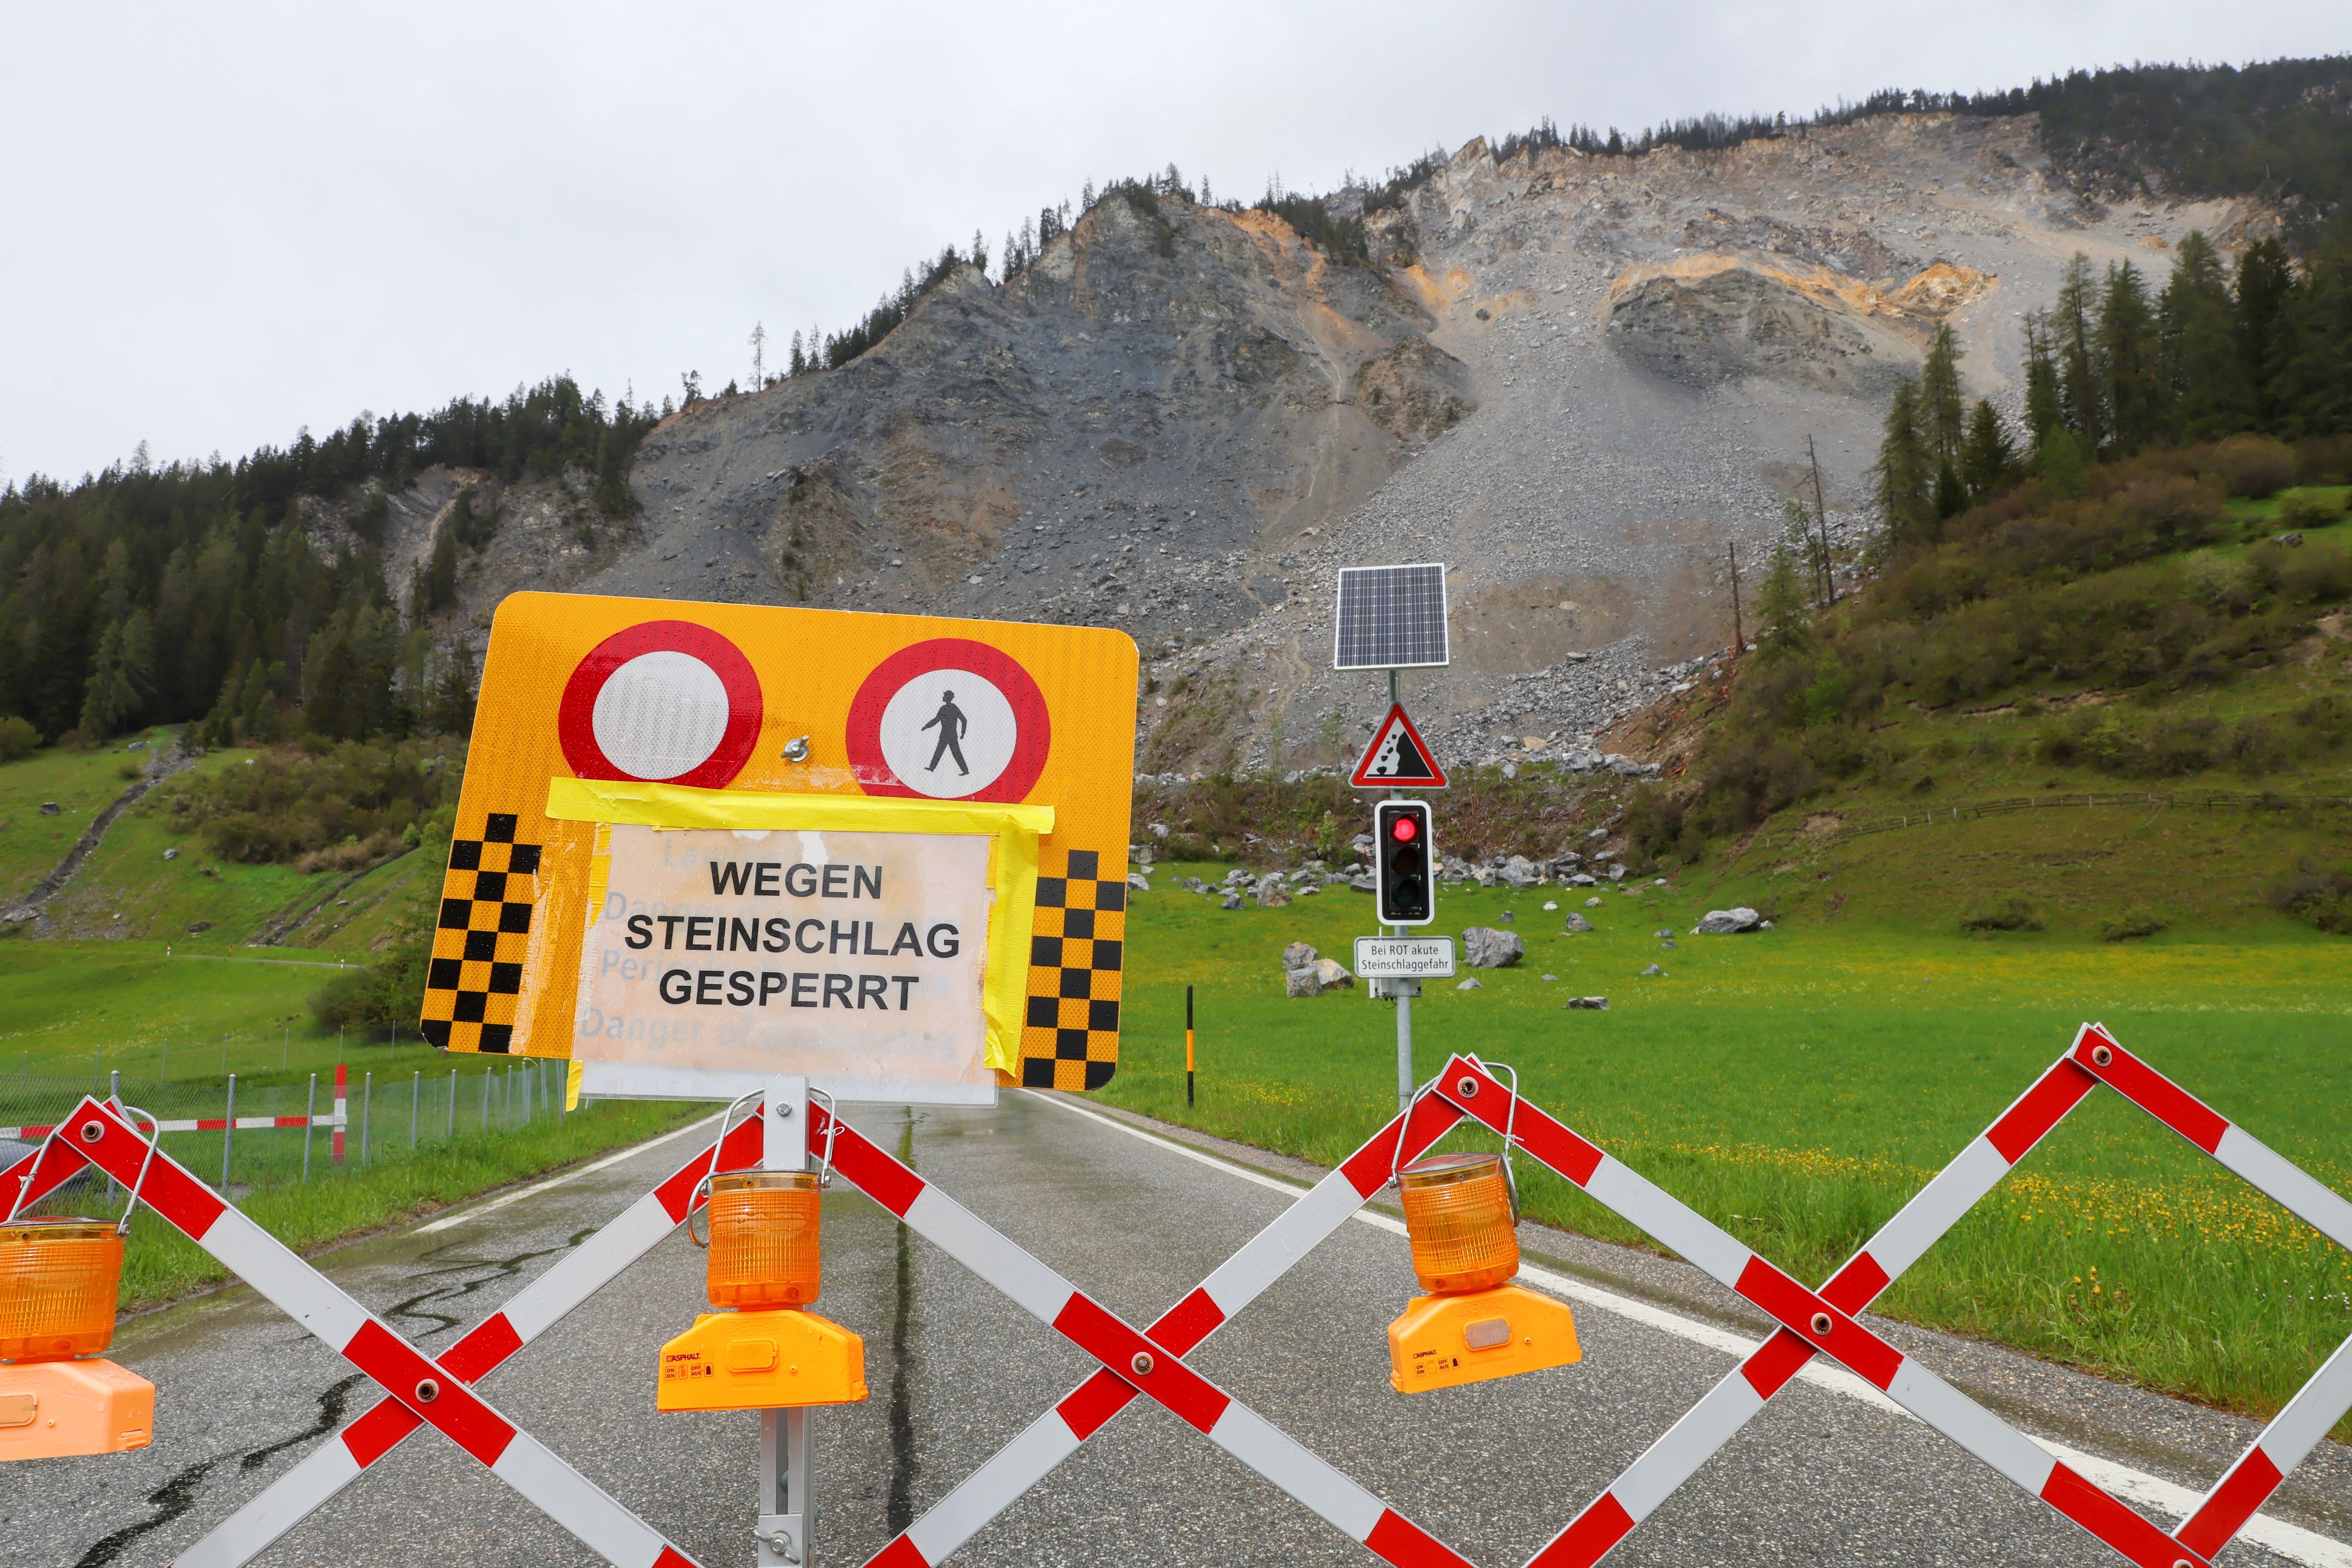 Una señal de carretera dice "Cerrado debido a la caída de rocas" en el pueblo de Brienz, Suiza, el 11 de mayo de 2023 (REUTERS/Denis Balibouse)